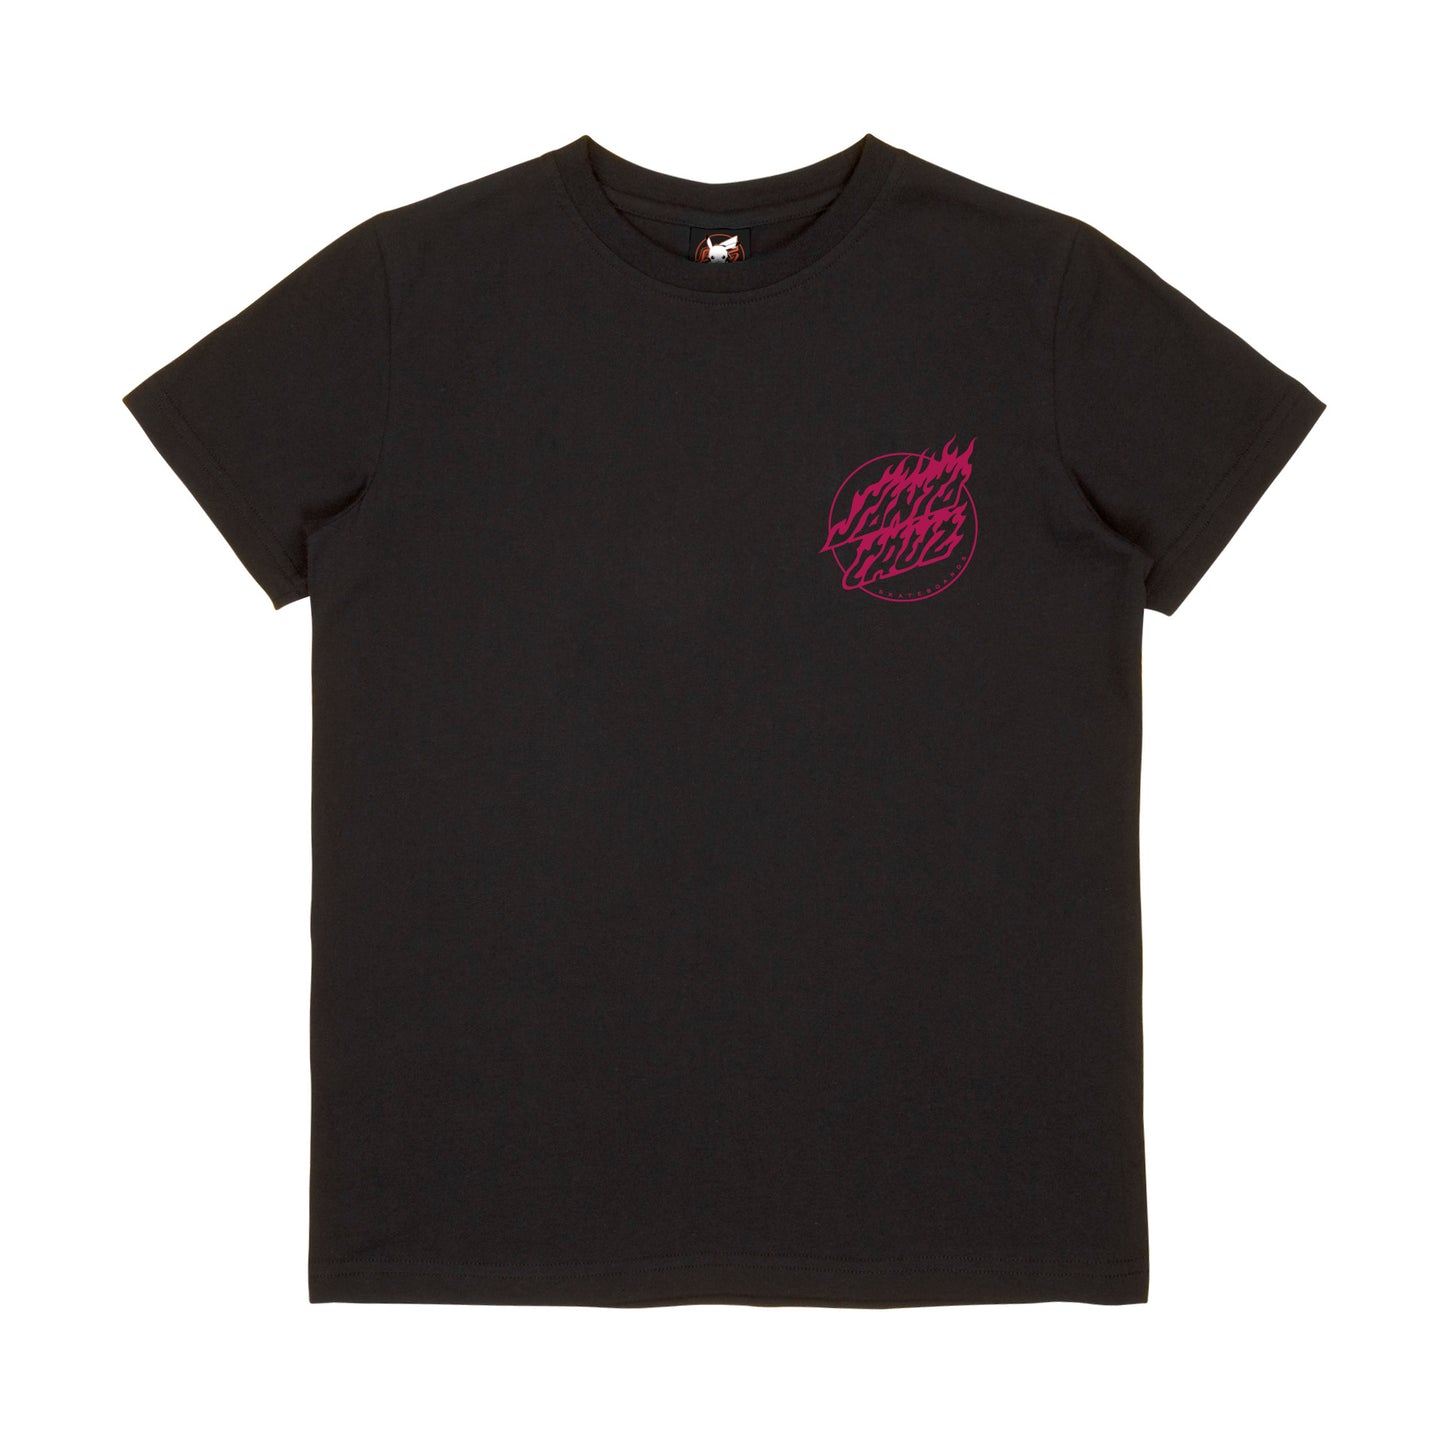 Santa Cruz Youth Charmander T-Shirt - Black